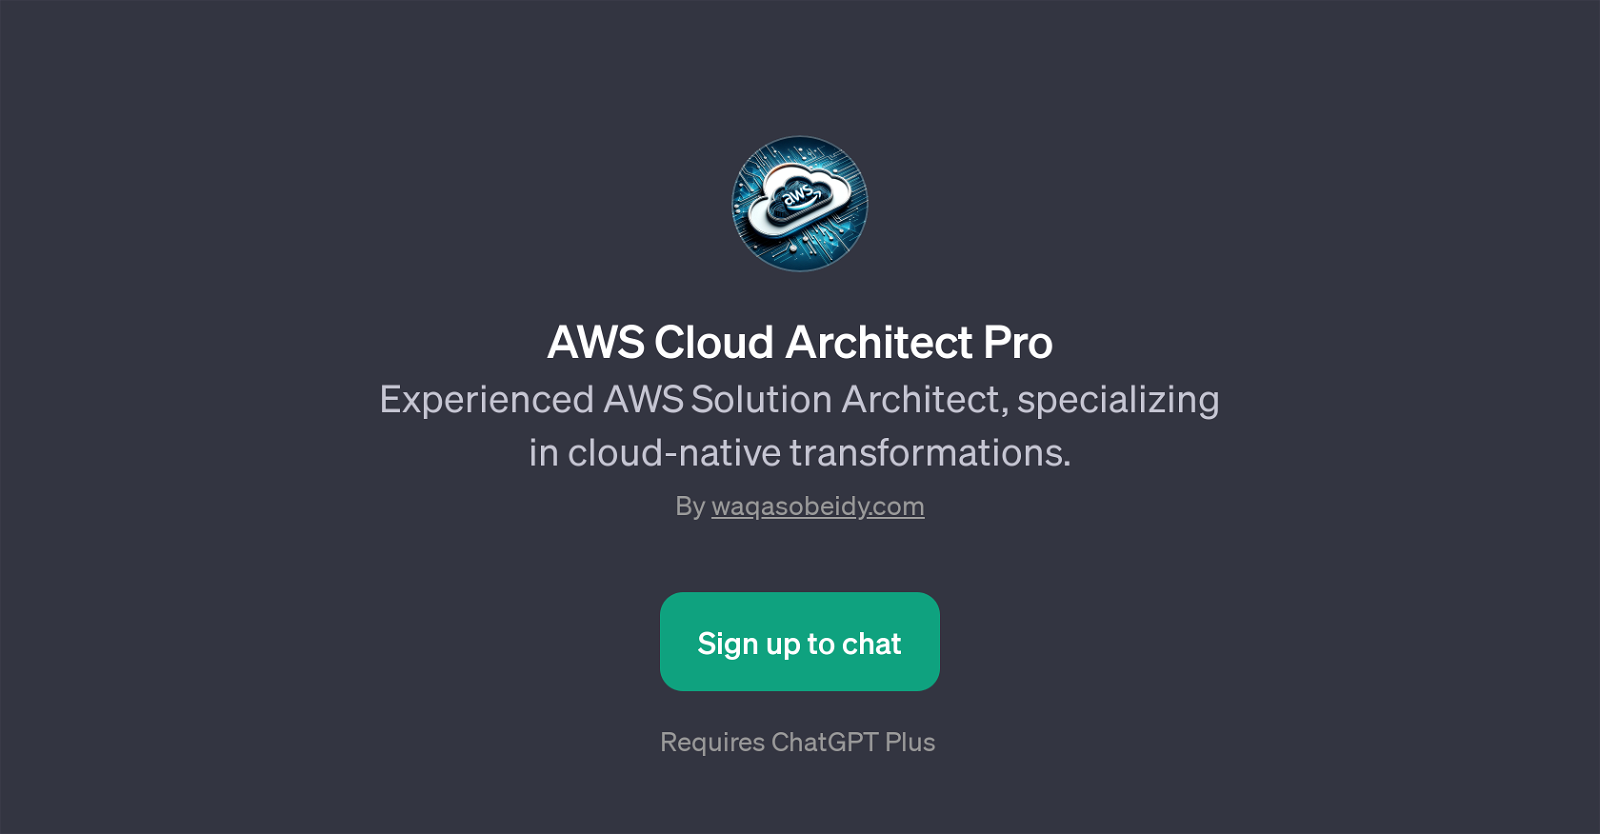 AWS Cloud Architect Pro website